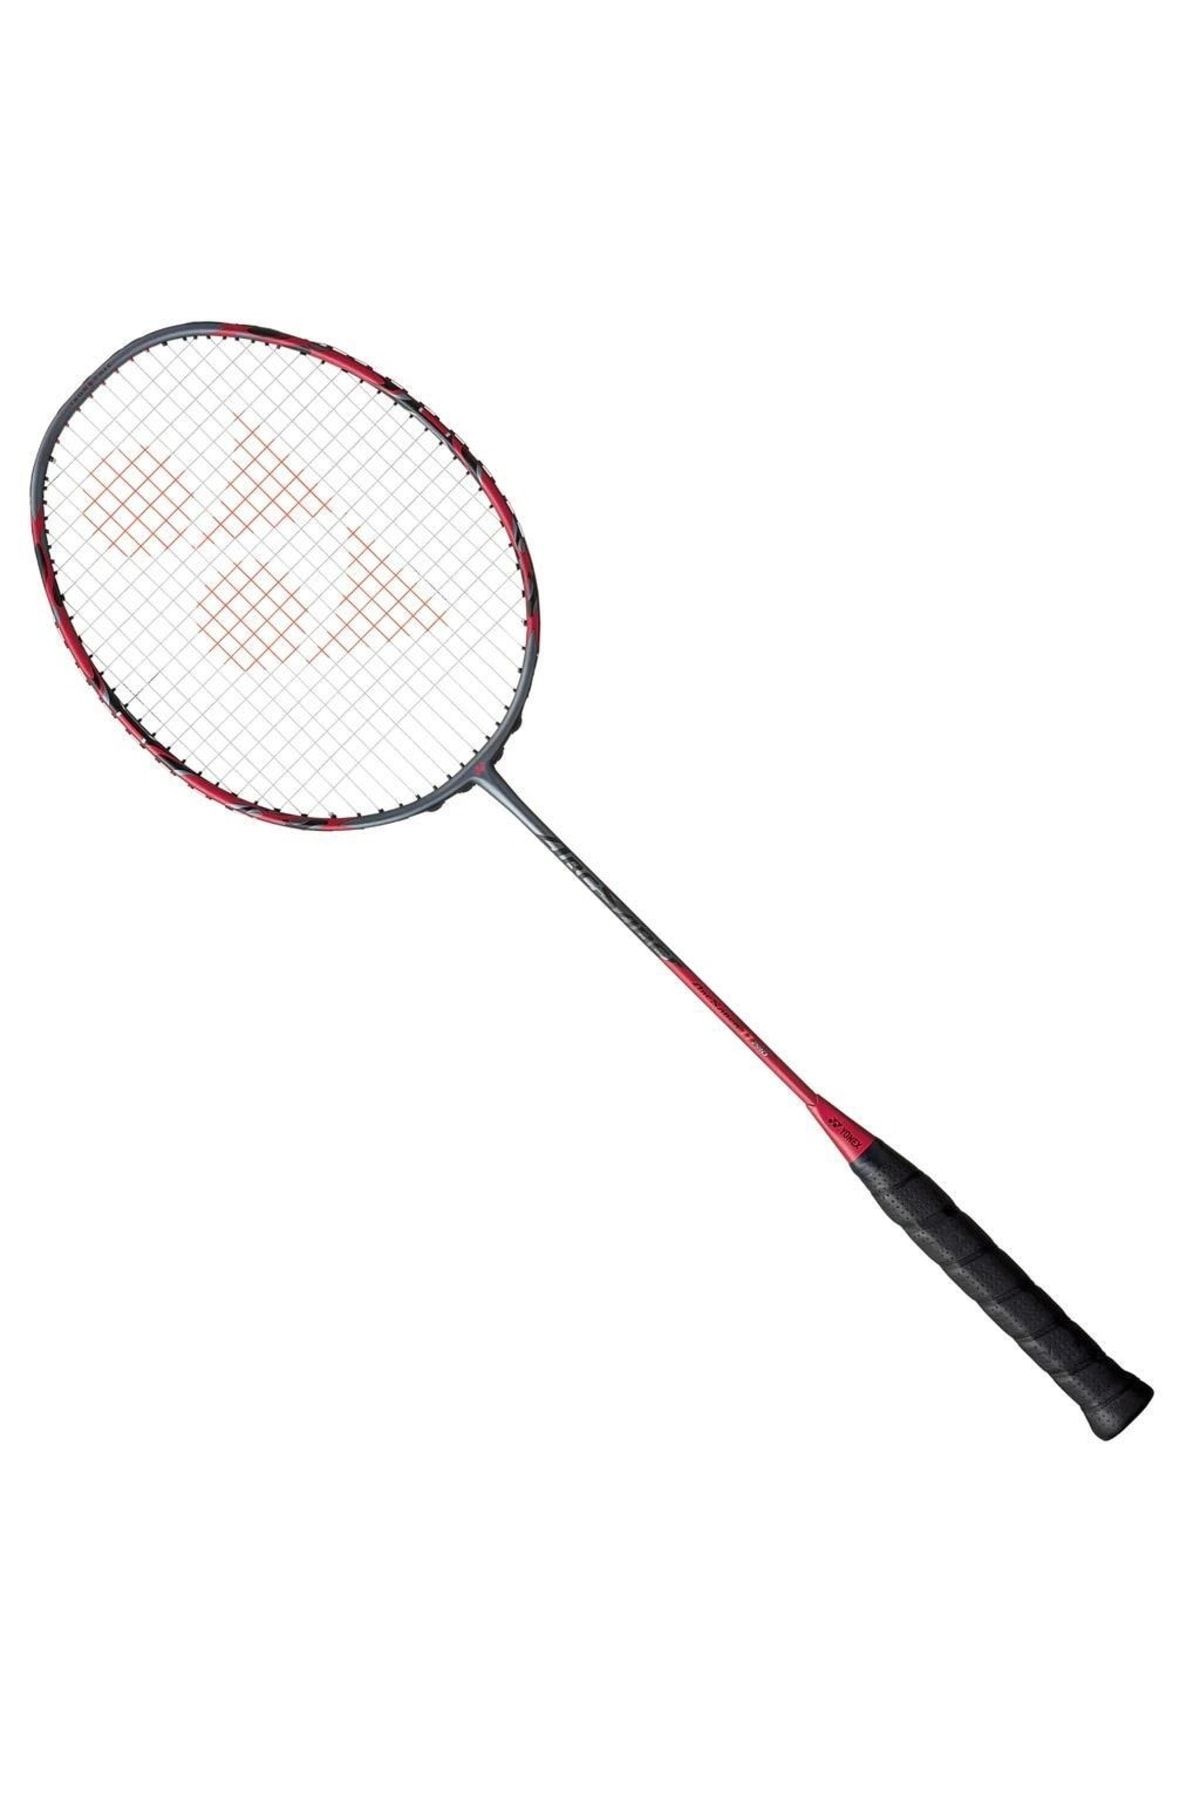 Yonex Yy22 Arc 11 Pro Gri Badminton Raketi